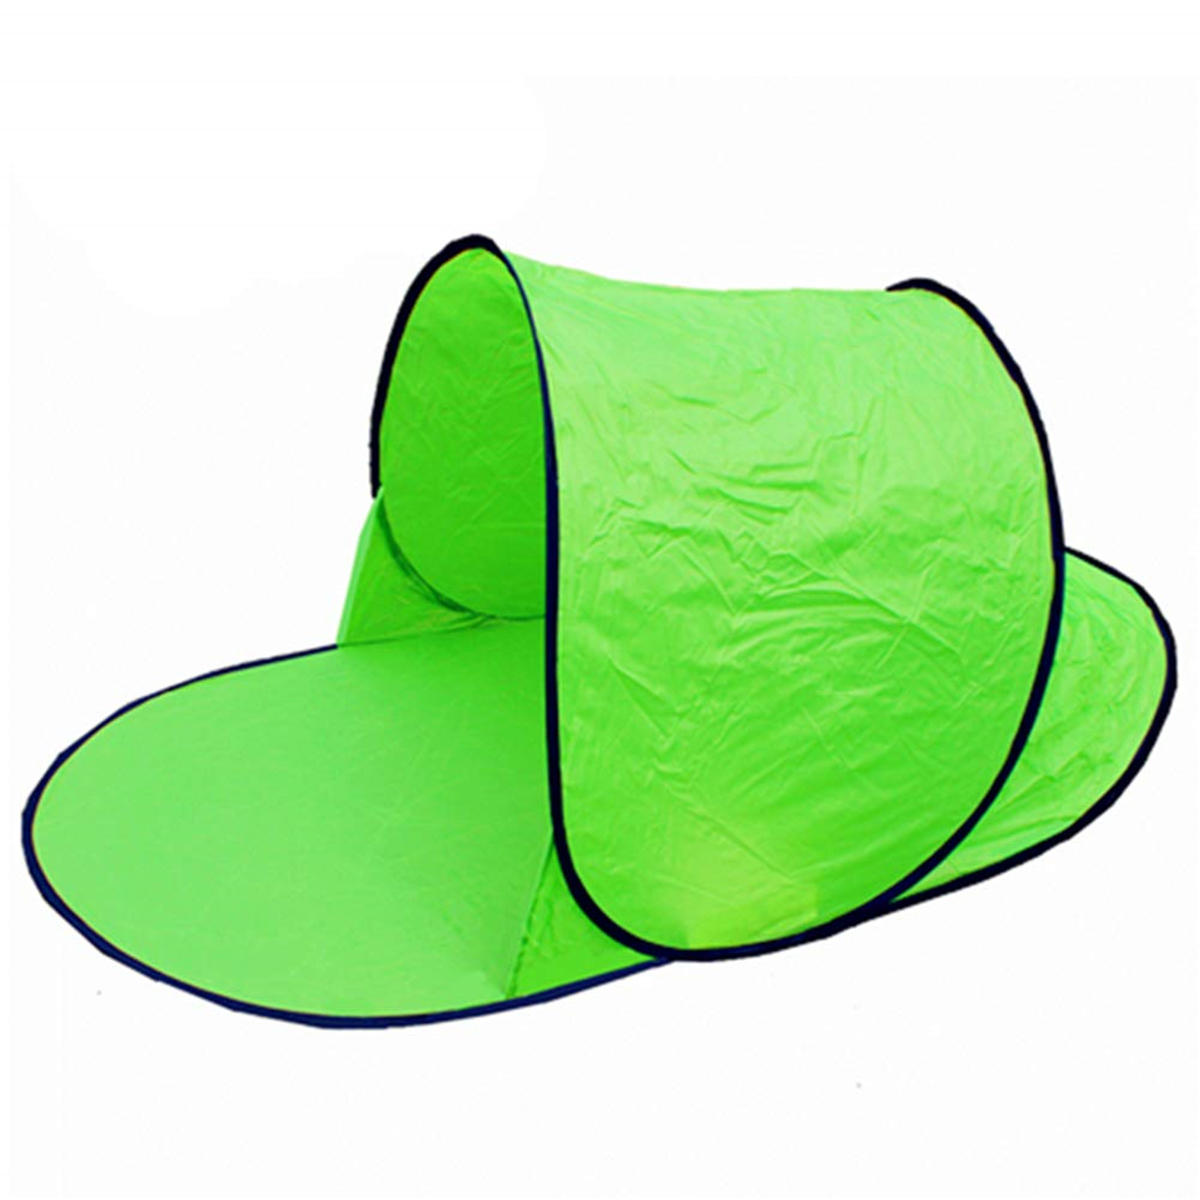 Jednoosobowy namiot wodoodporny i z ochroną przed promieniami UV na kemping, plażę i wypoczynek na świeżym powietrzu.